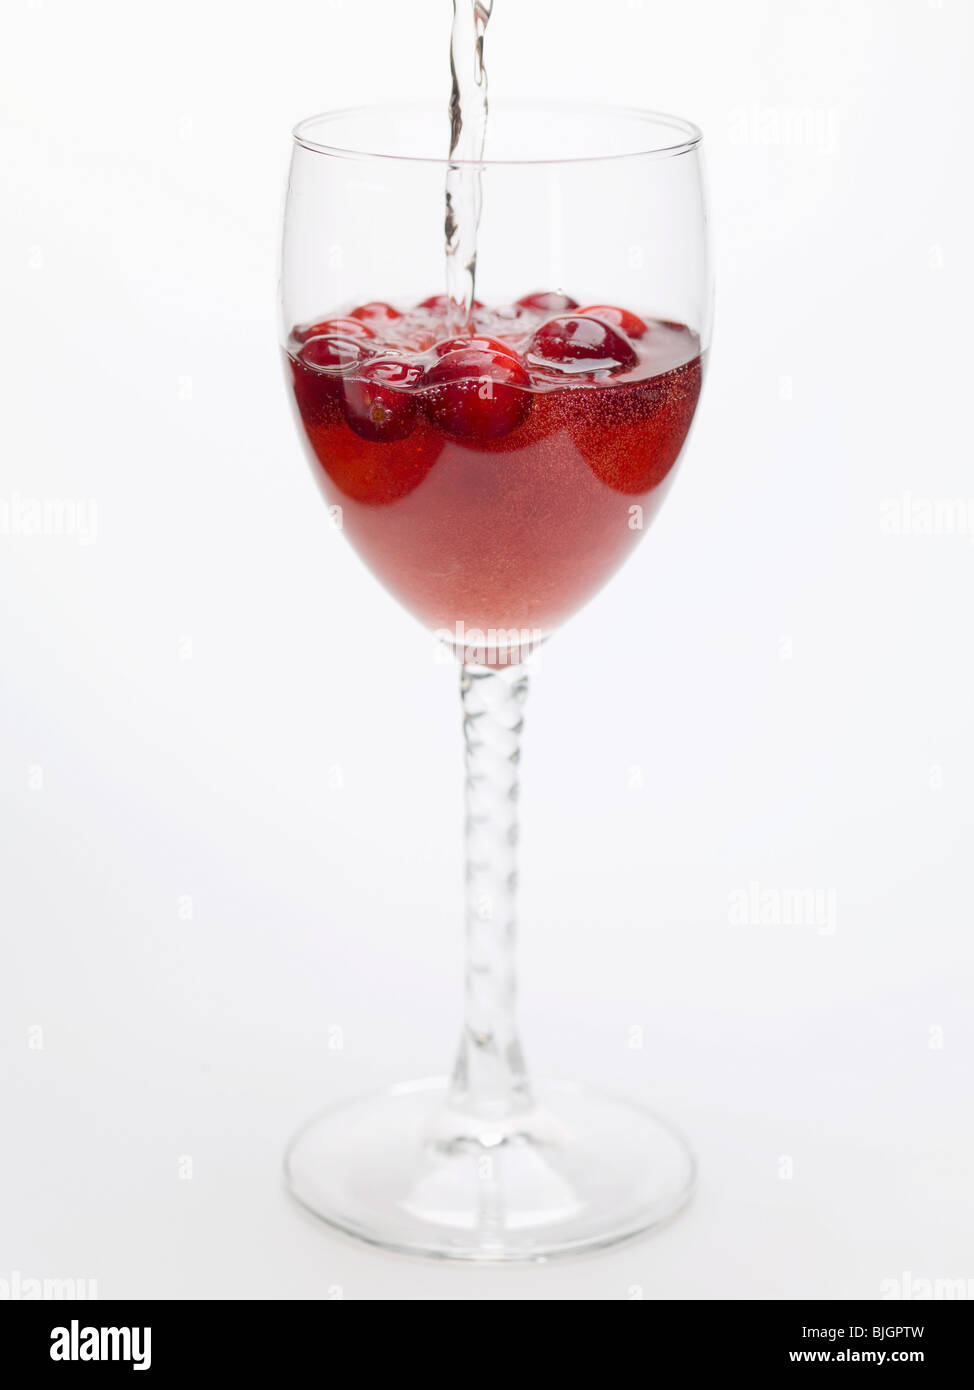 Hinzufügen von Wasser zu Cranberry trinken- Stockfoto